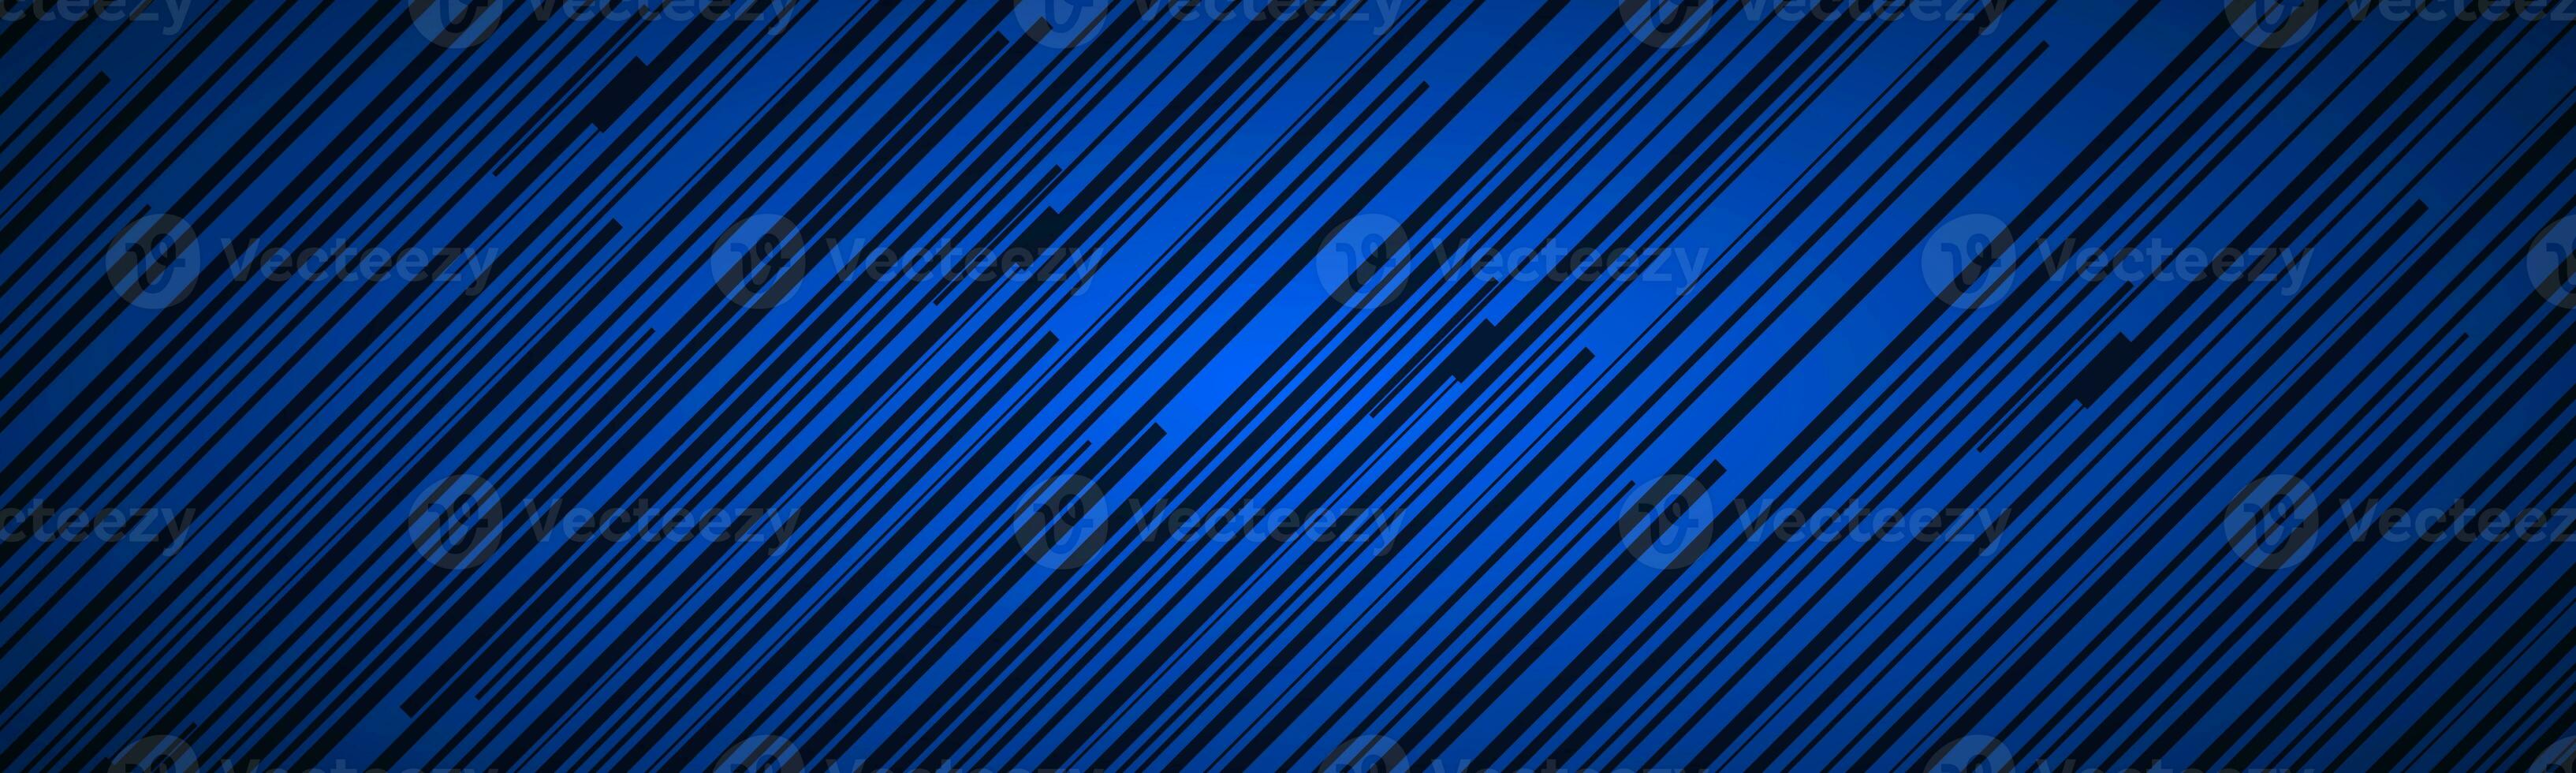 donker abstract hoofd met blauw en zwart schuin lijnen. gestreept patroon. parallel lijnen en stroken spandoek. diagonaal vezel vector illustratie foto